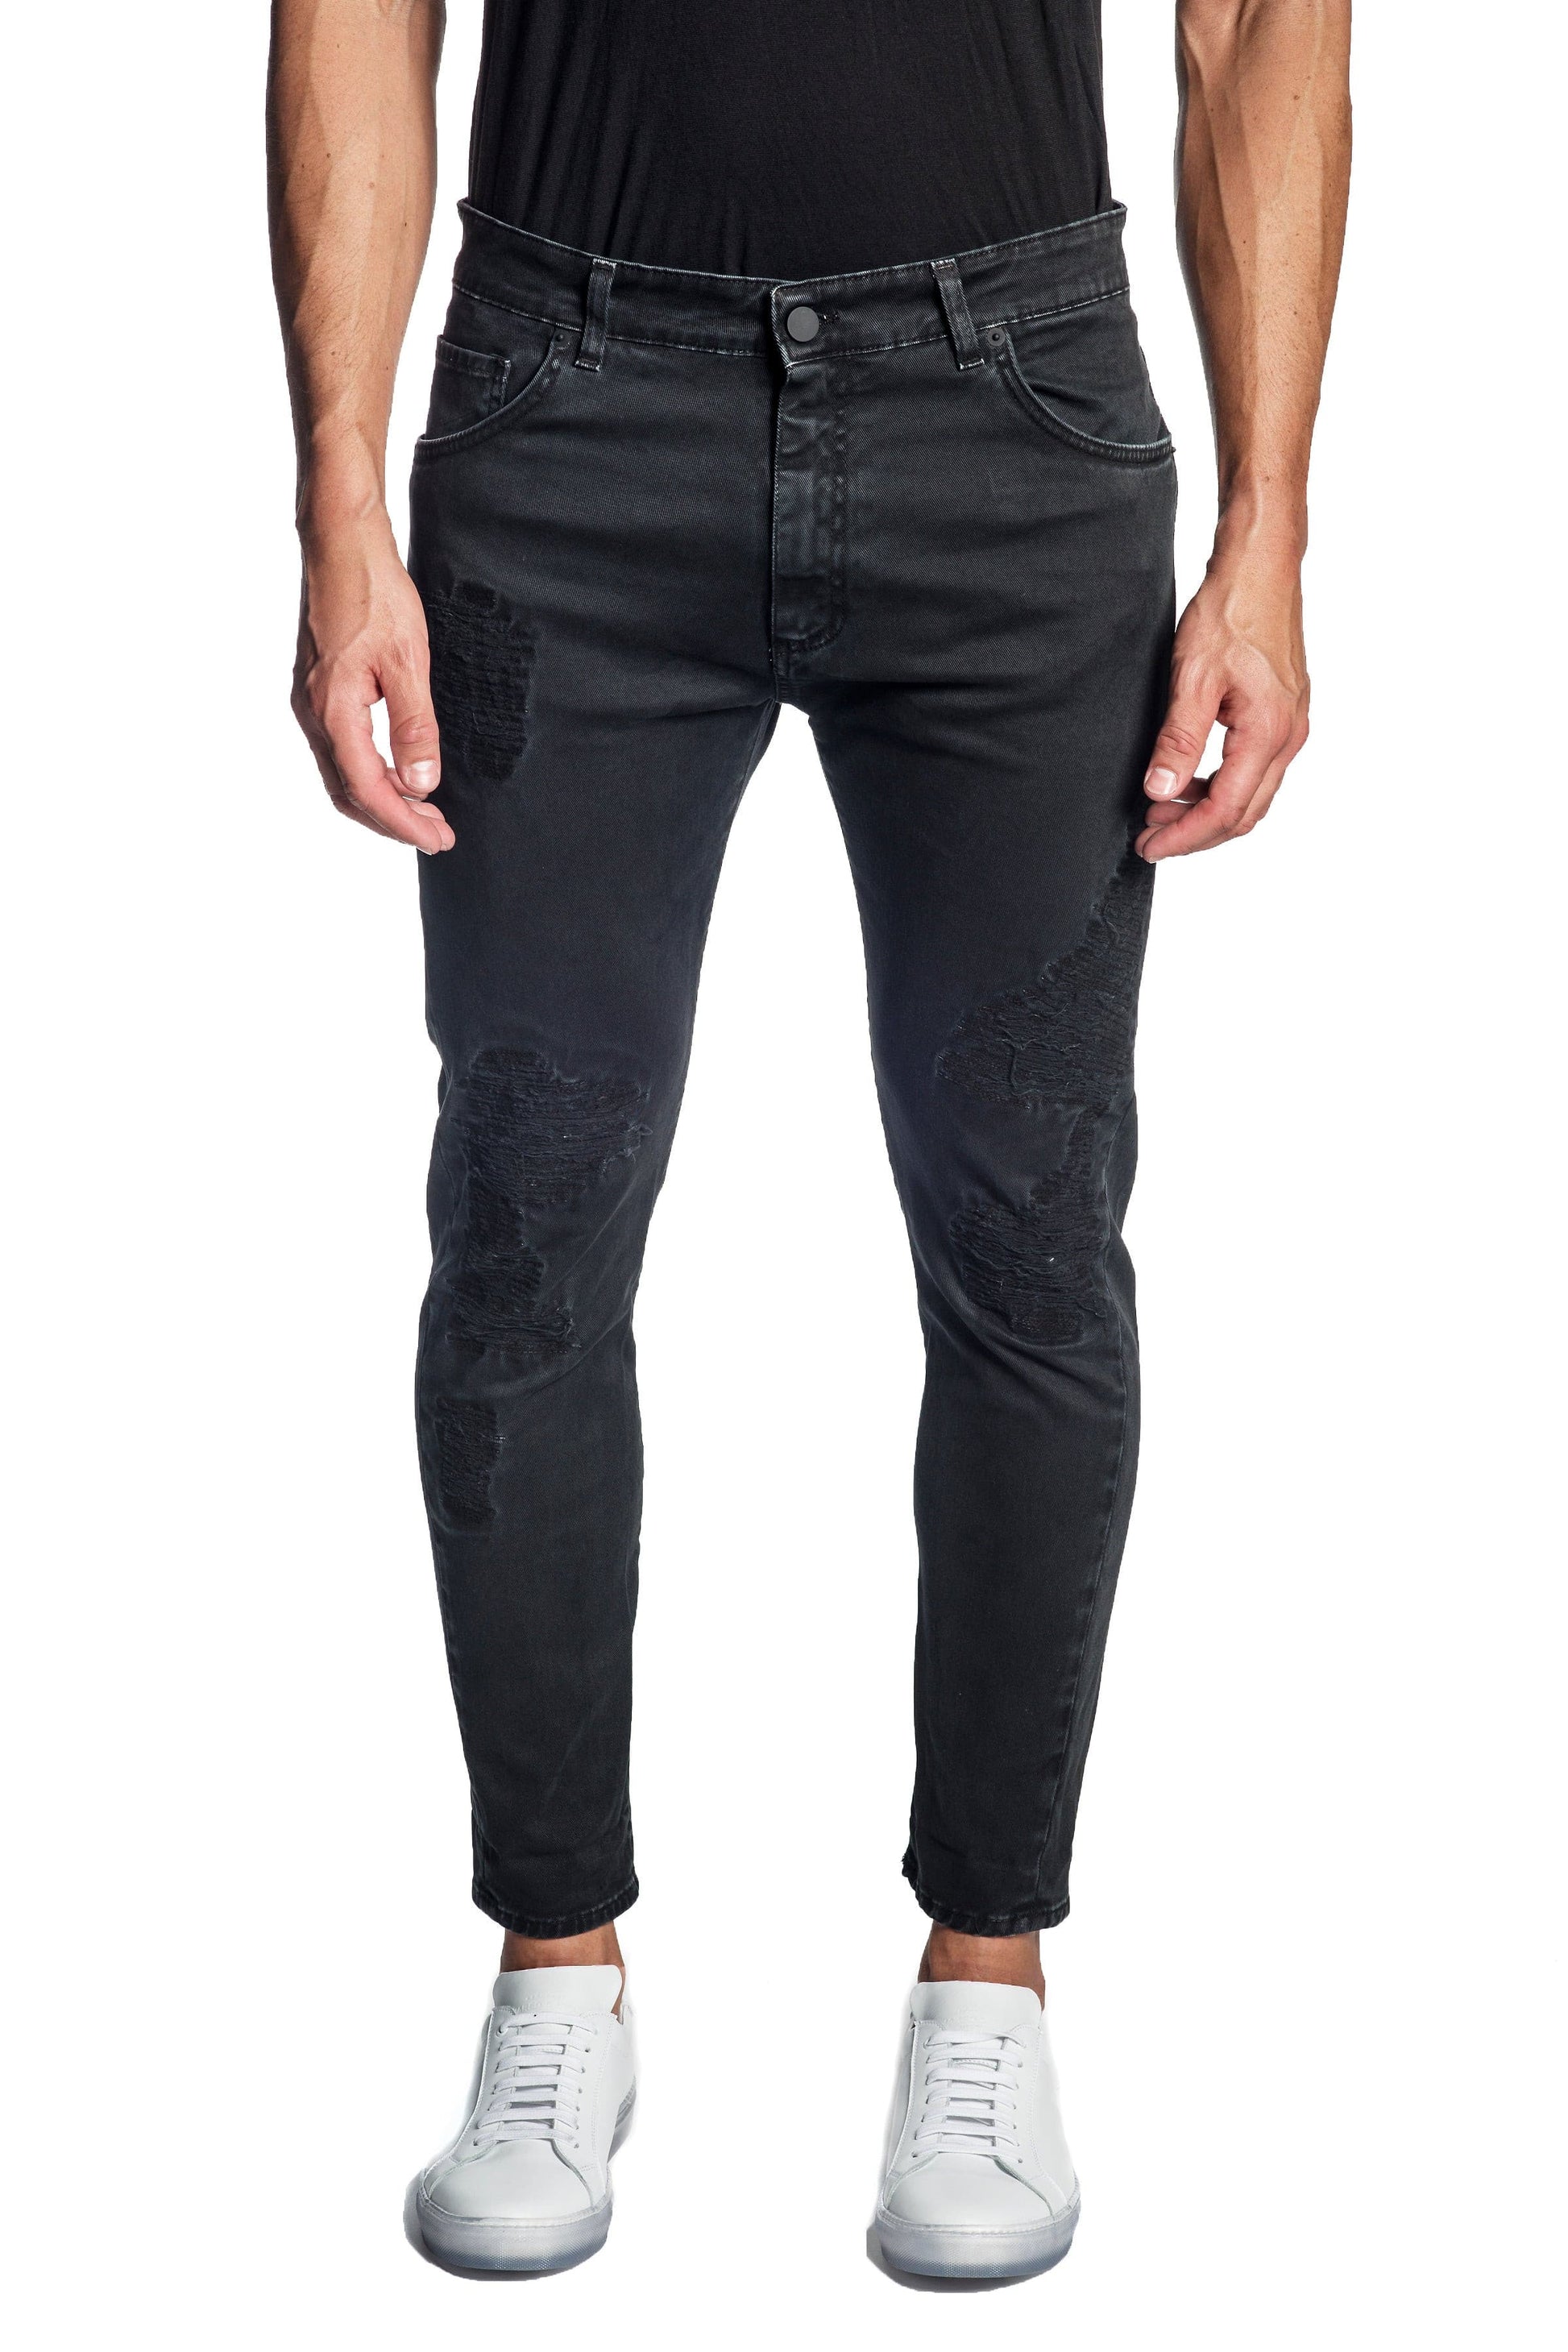 Black Skinny Ripped Denim Jeans for Men JN-799.